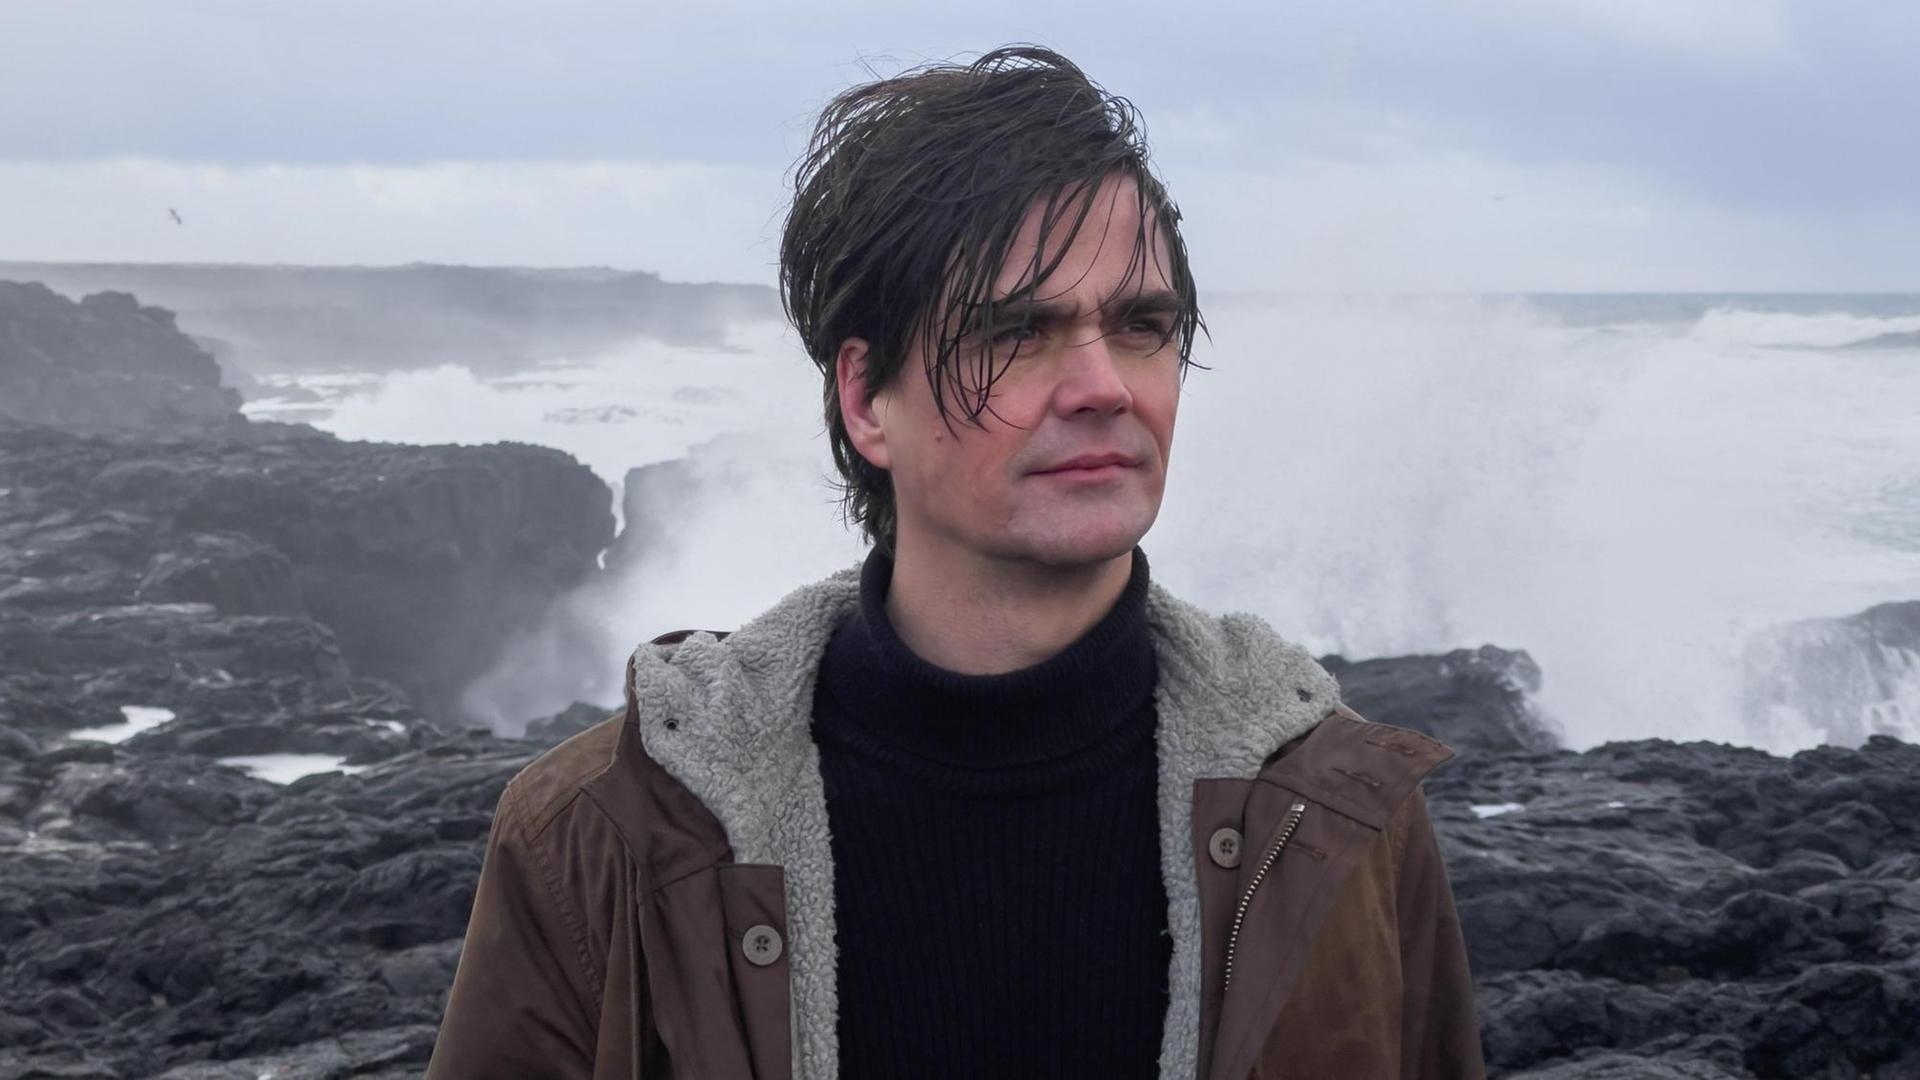 Ein Mann mit aufgewühlten Haar steht an einer Klippe vor tosendem Meer und schaut mit ernsthaften Blick in die Weite.